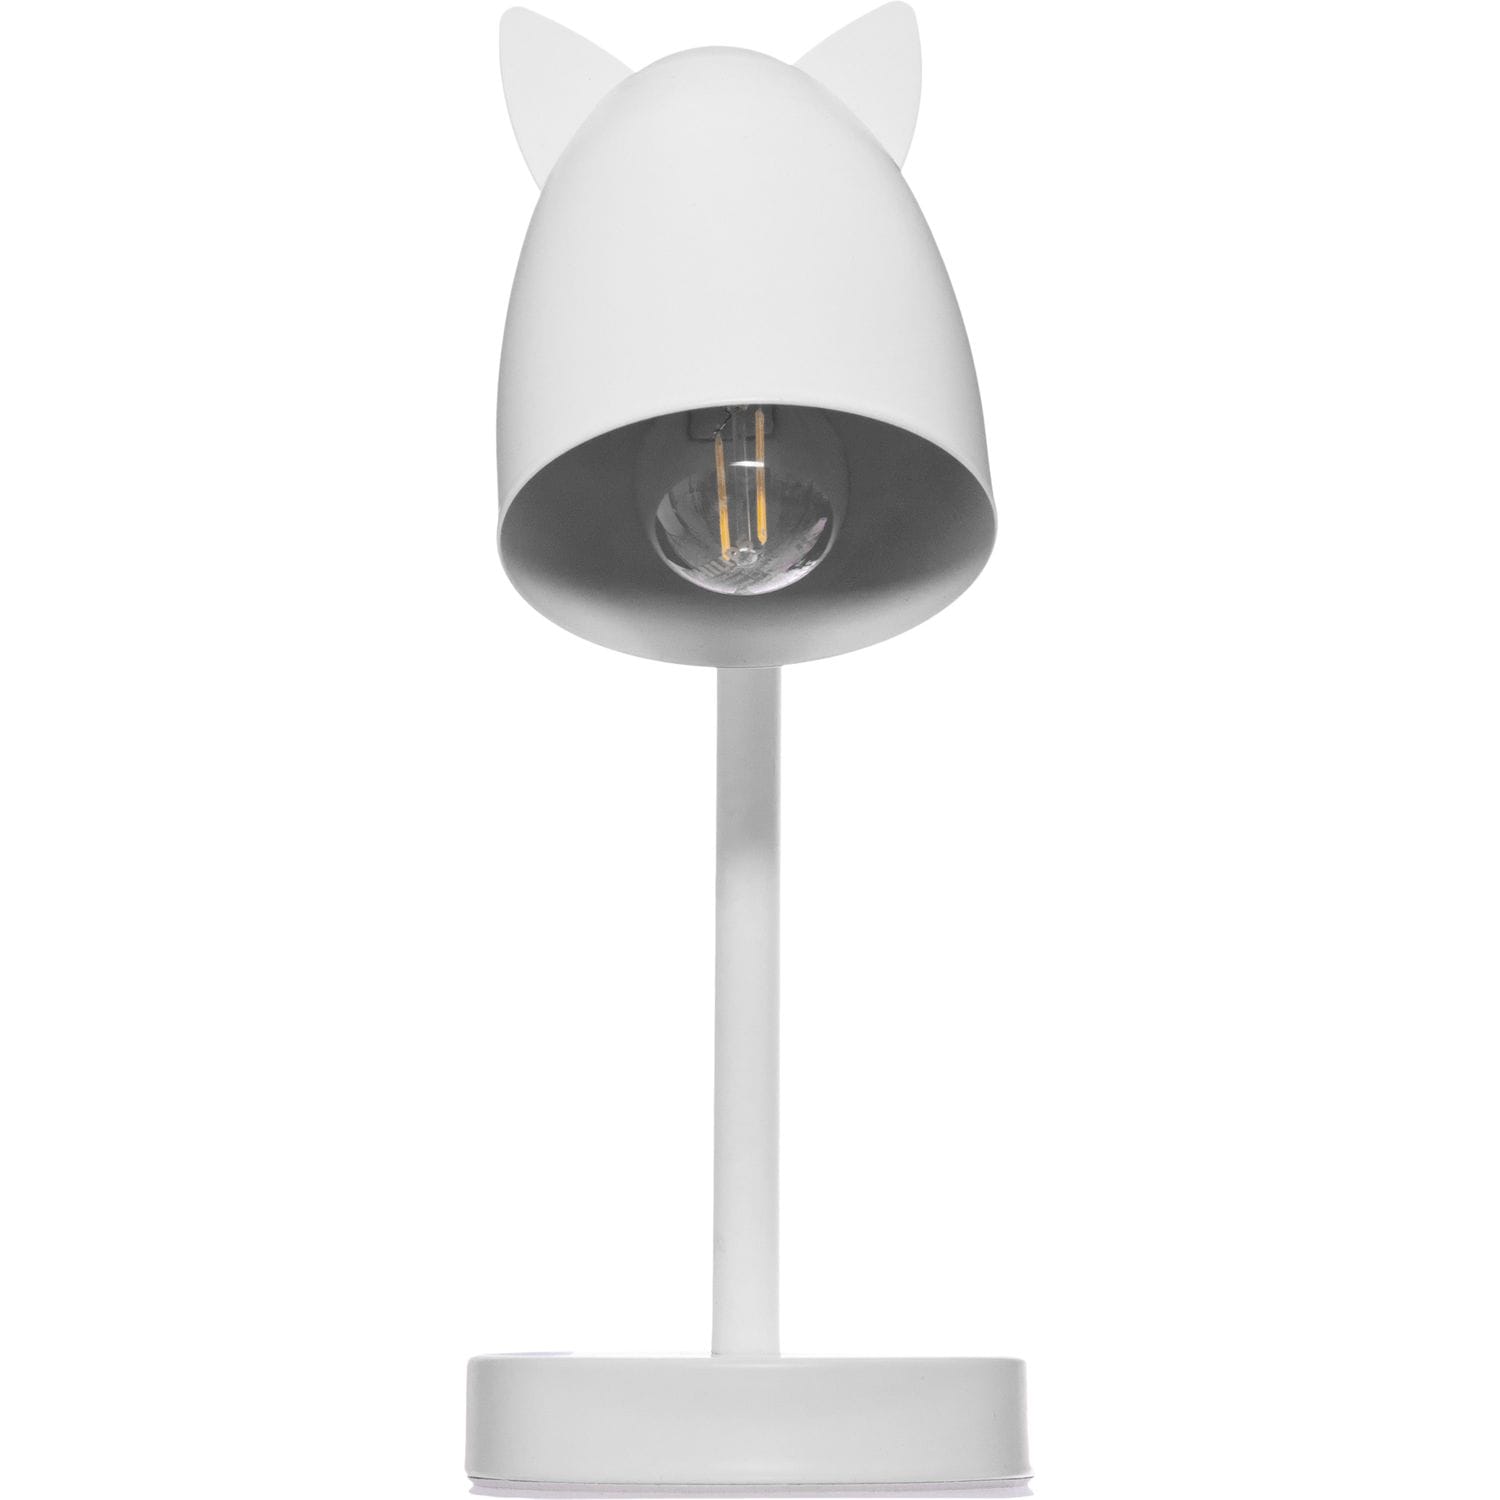 Lampe LED, Lampe de Bureau Enfant, oreille de chat lampe de chevet